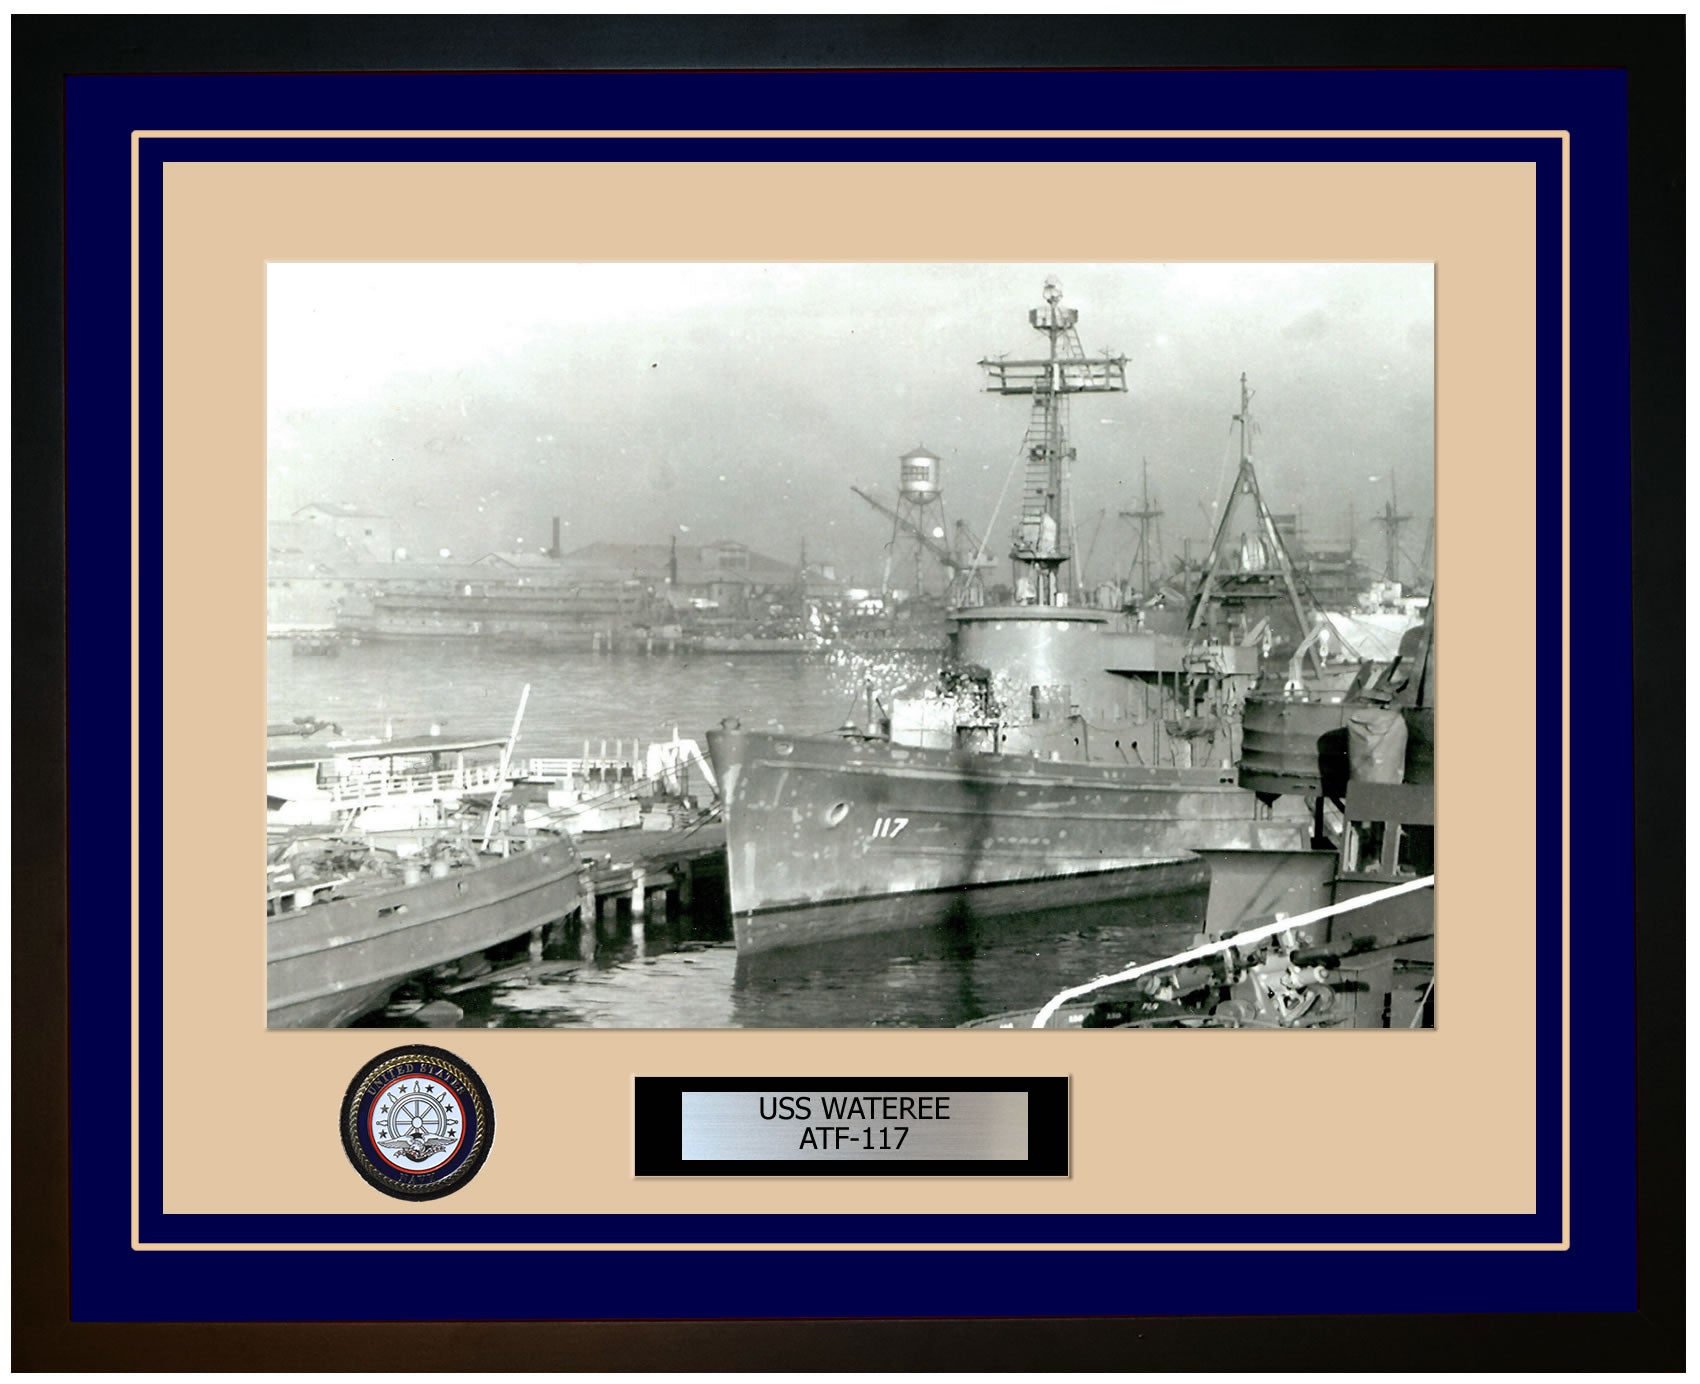 USS WATEREE ATF-117 Framed Navy Ship Photo Blue